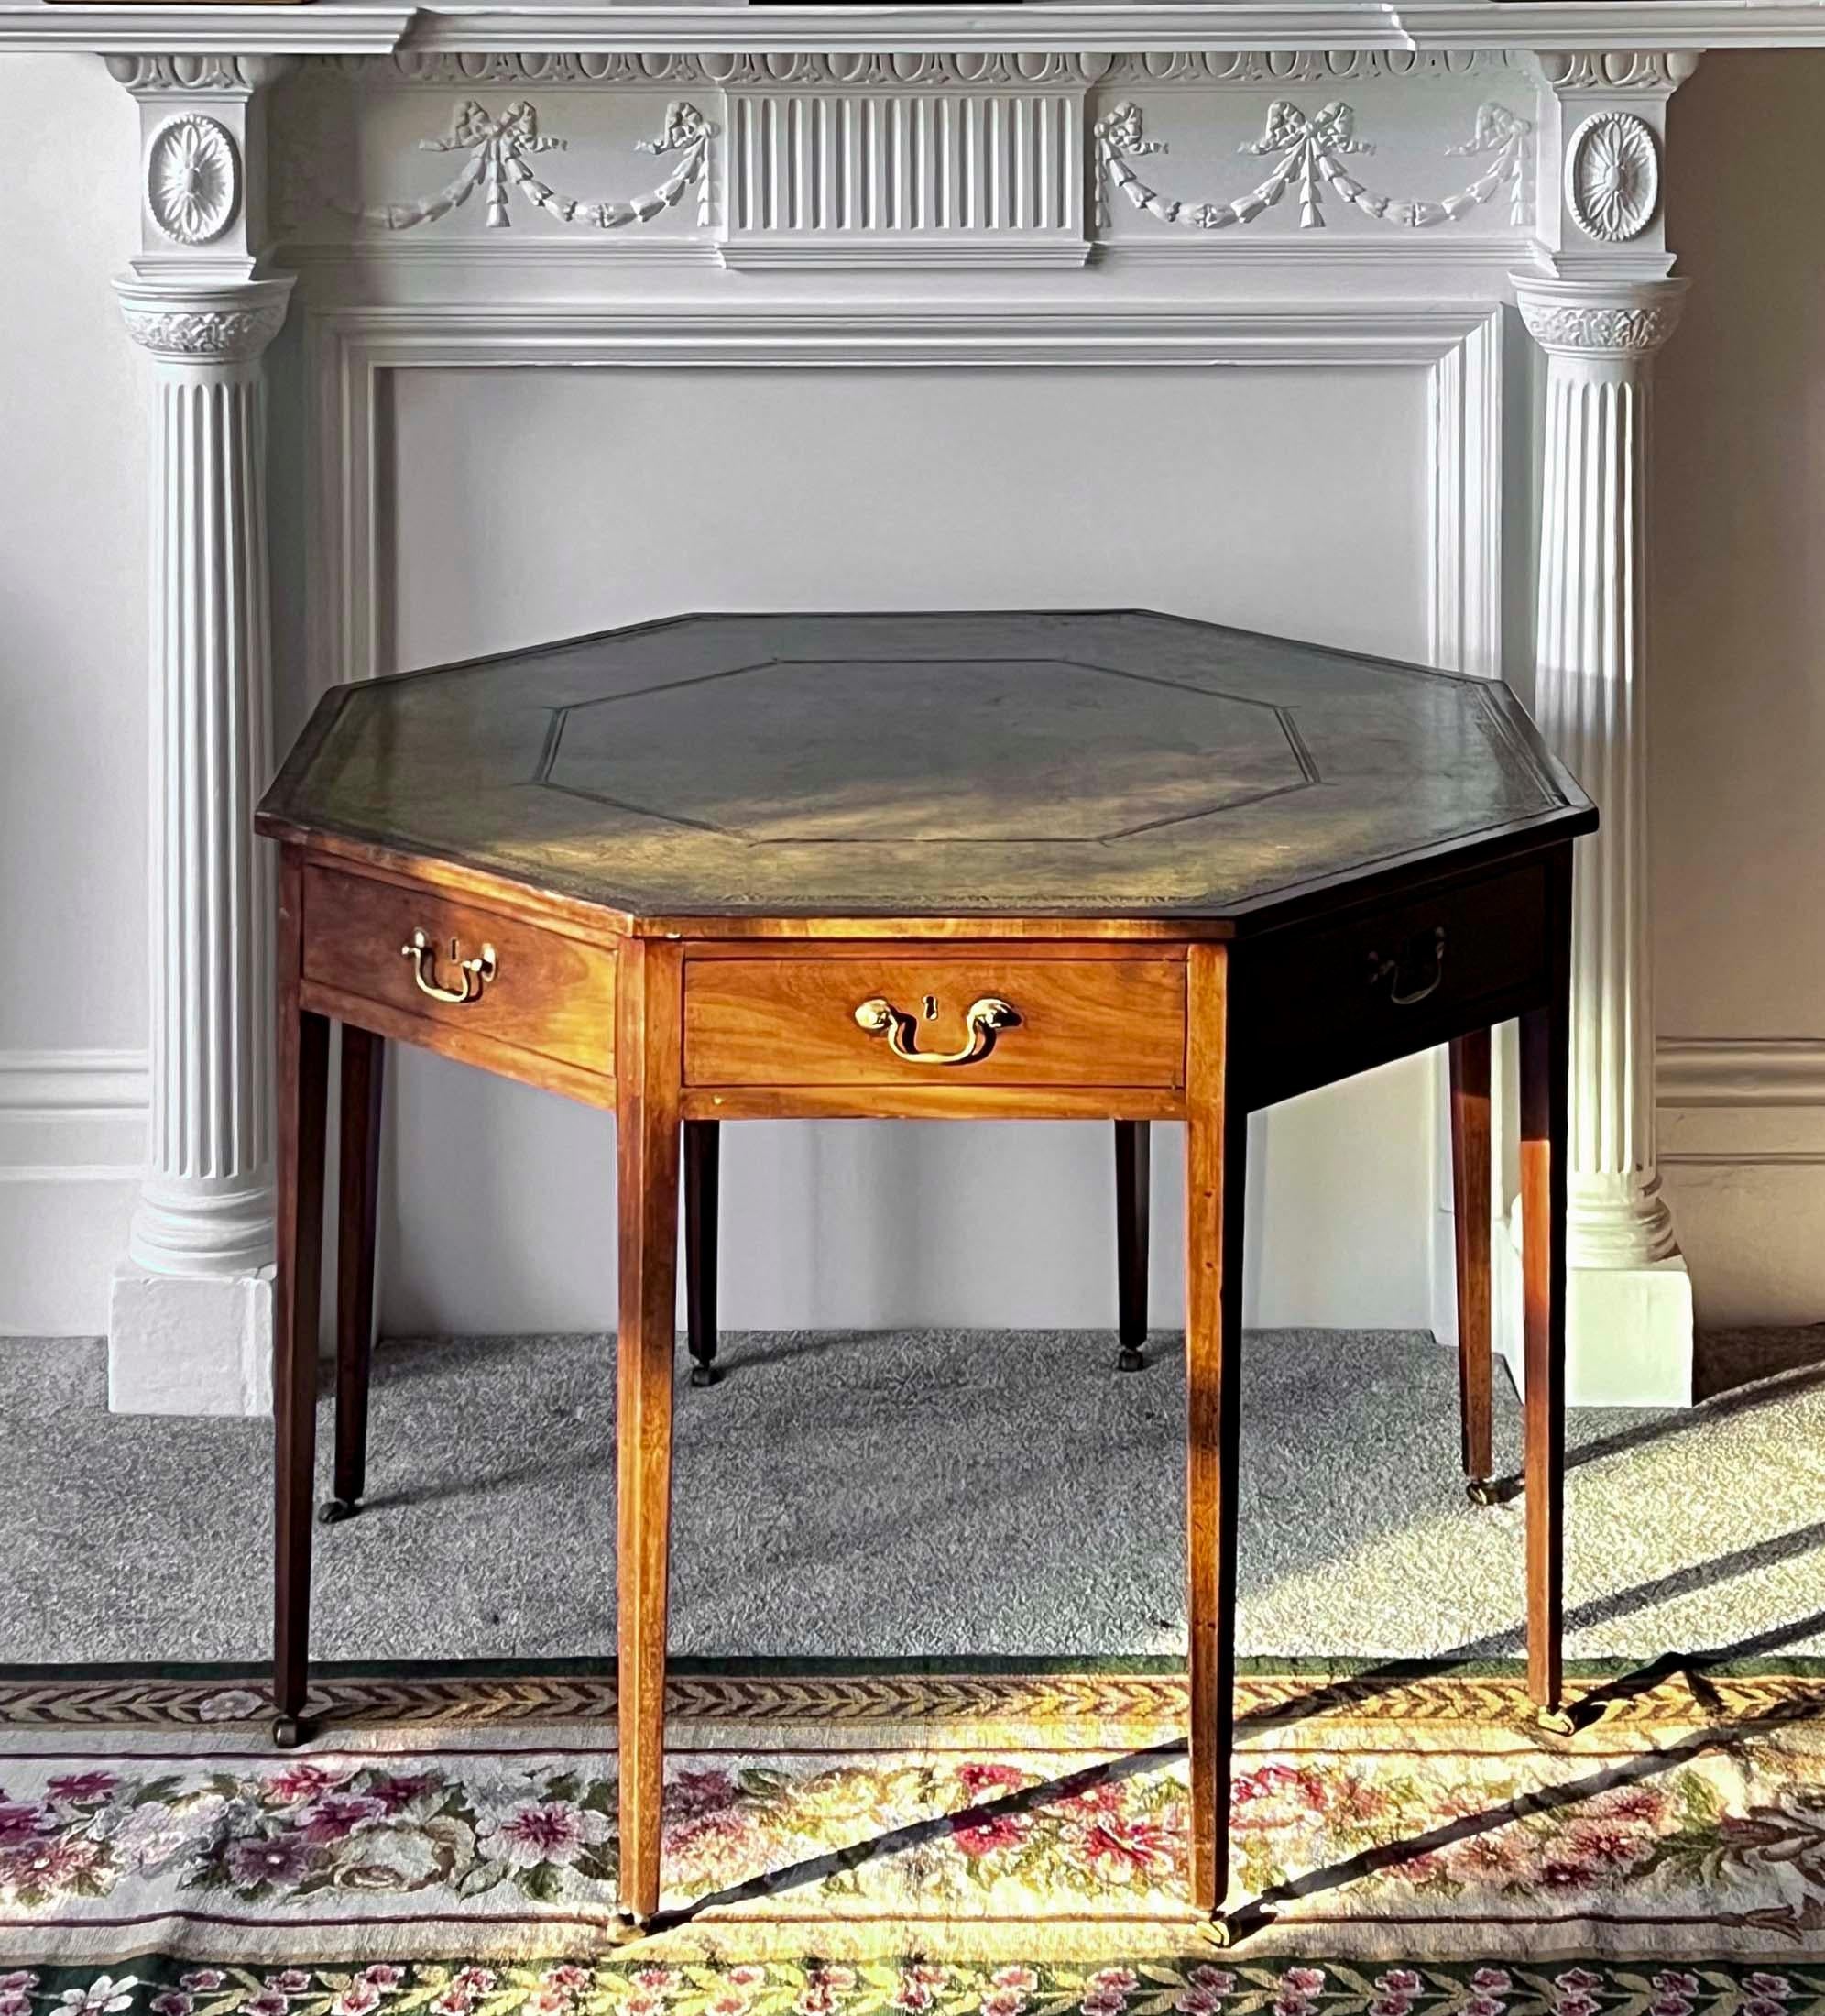 Une élégante table de bibliothèque octogonale de la fin de la période George III - début de la période Regency, avec un plateau doublé de cuir vert vieilli et quatre tiroirs.
Anglais, vers 1800.

Pourquoi nous l'aimons
Insolite et élégamment